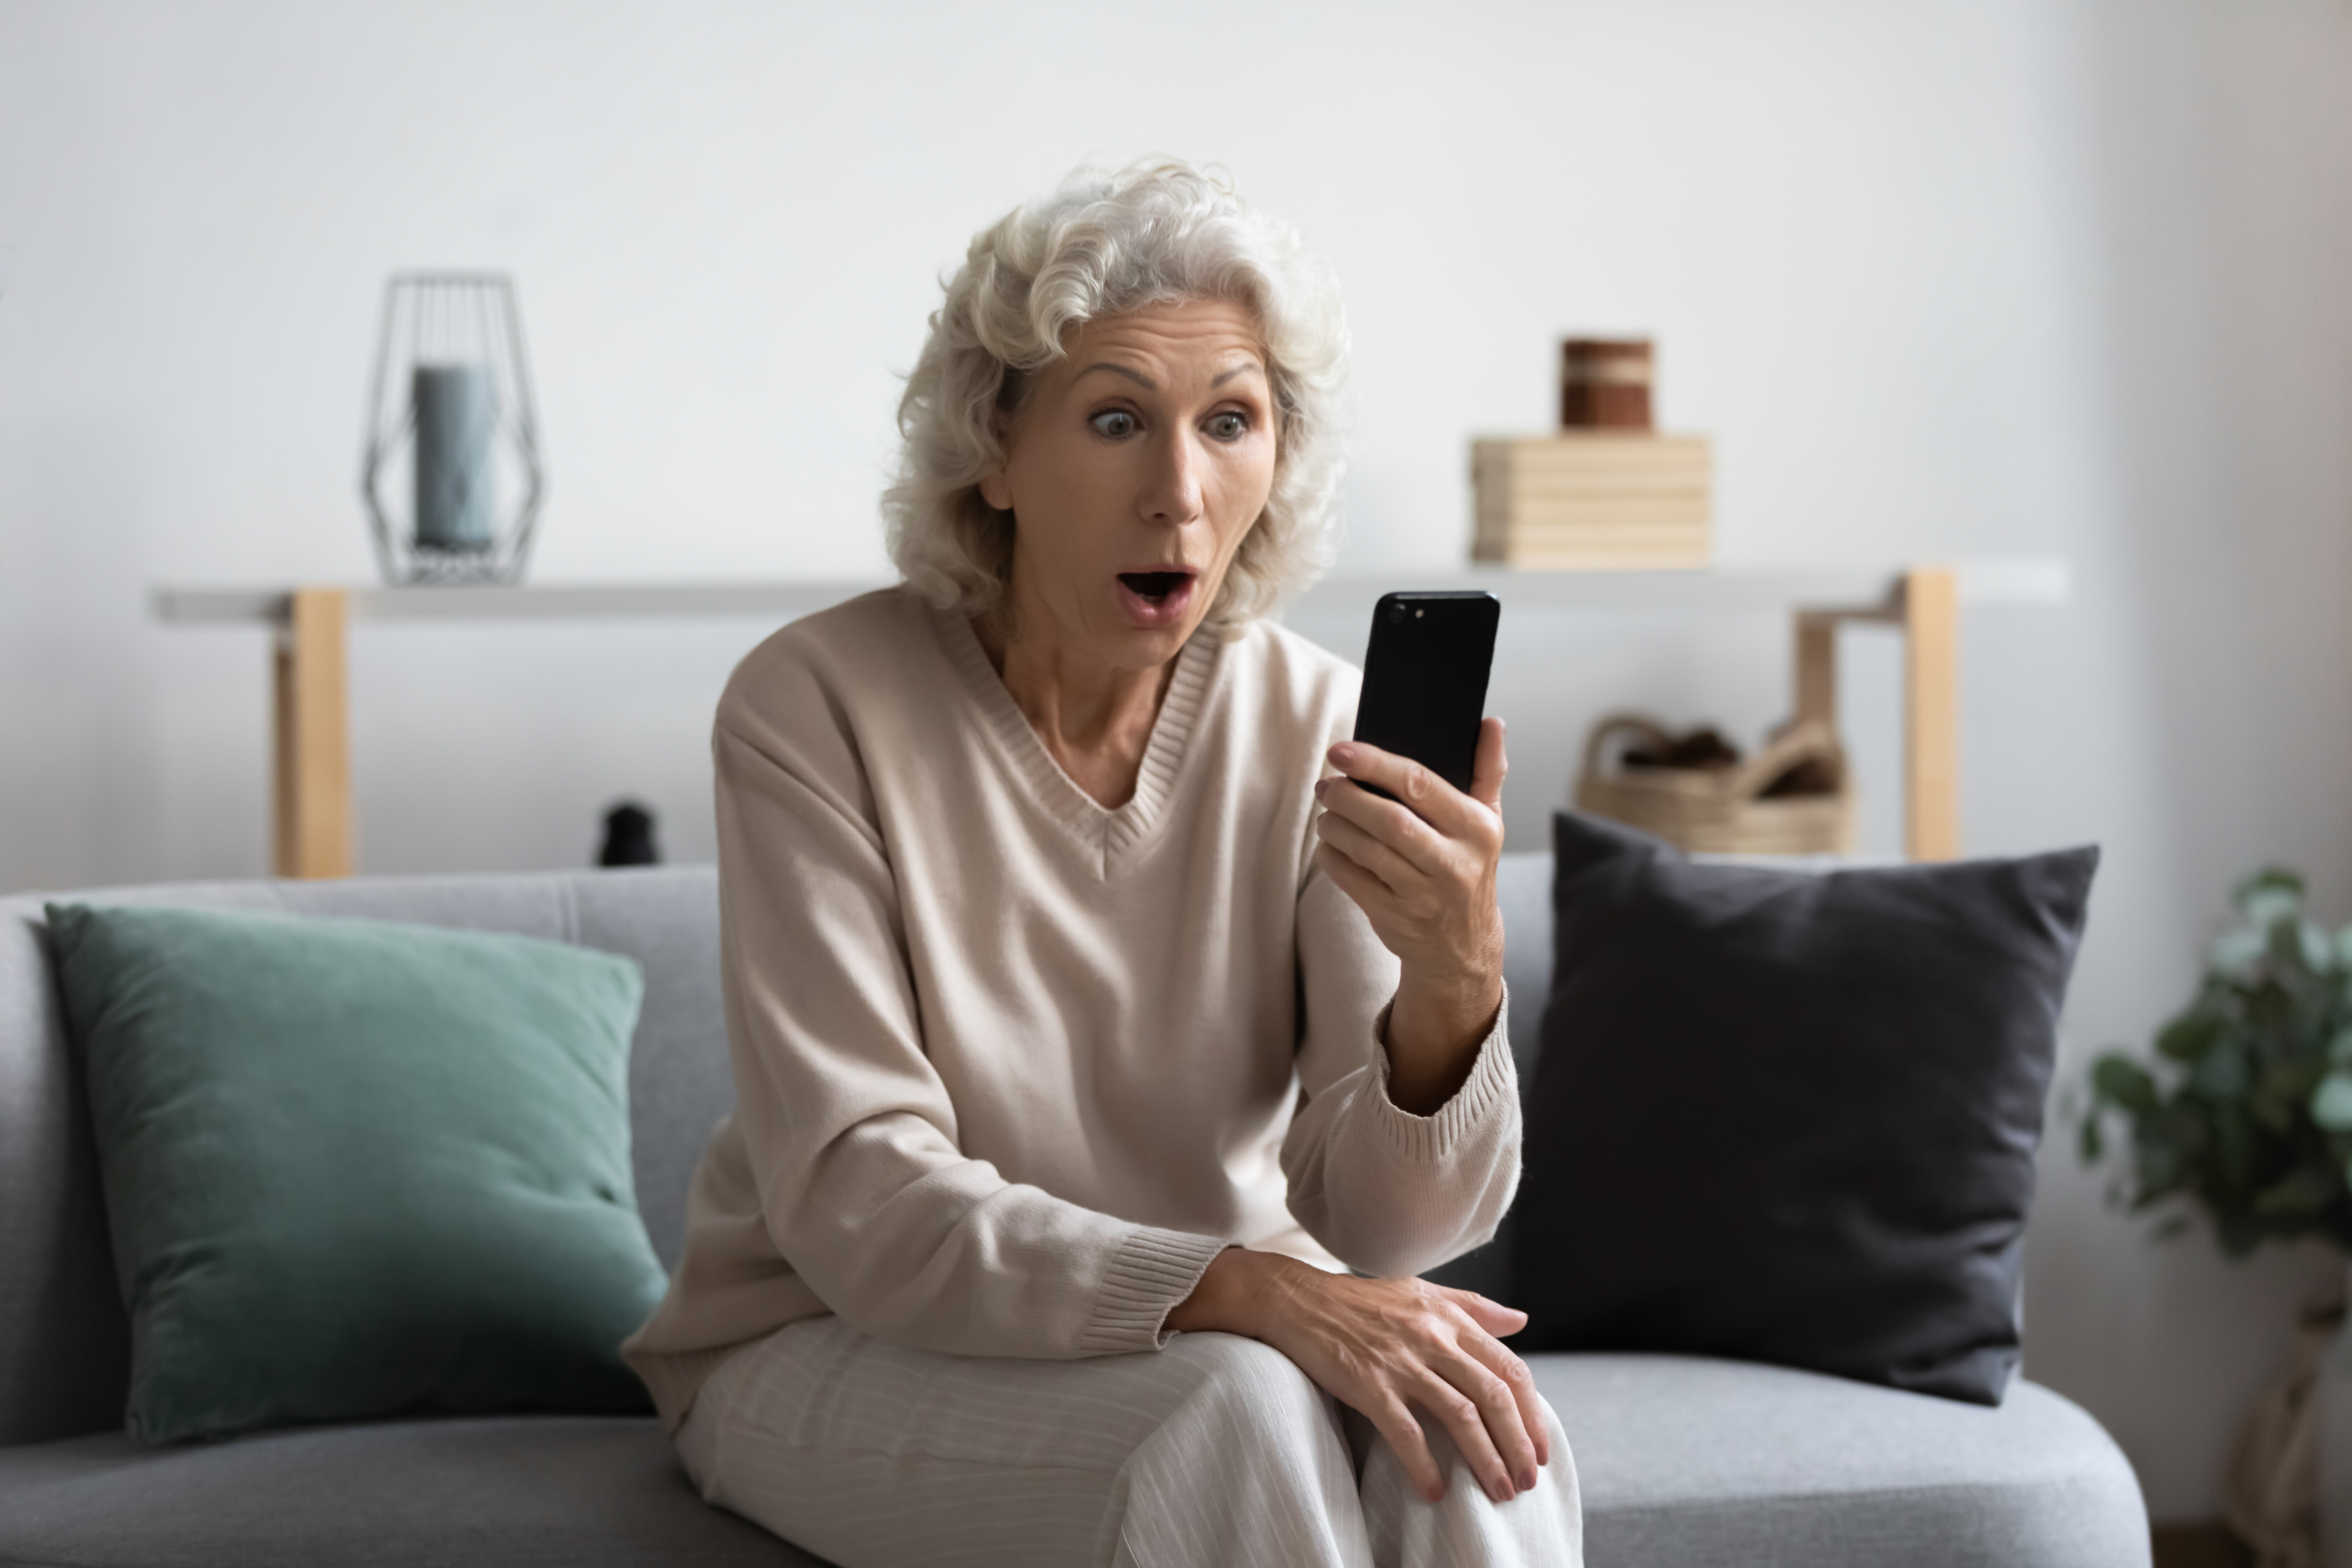 Image d'une femme âgée lisant quelque chose de choquant sur son téléphone. | Source : Shutterstock/fizkes